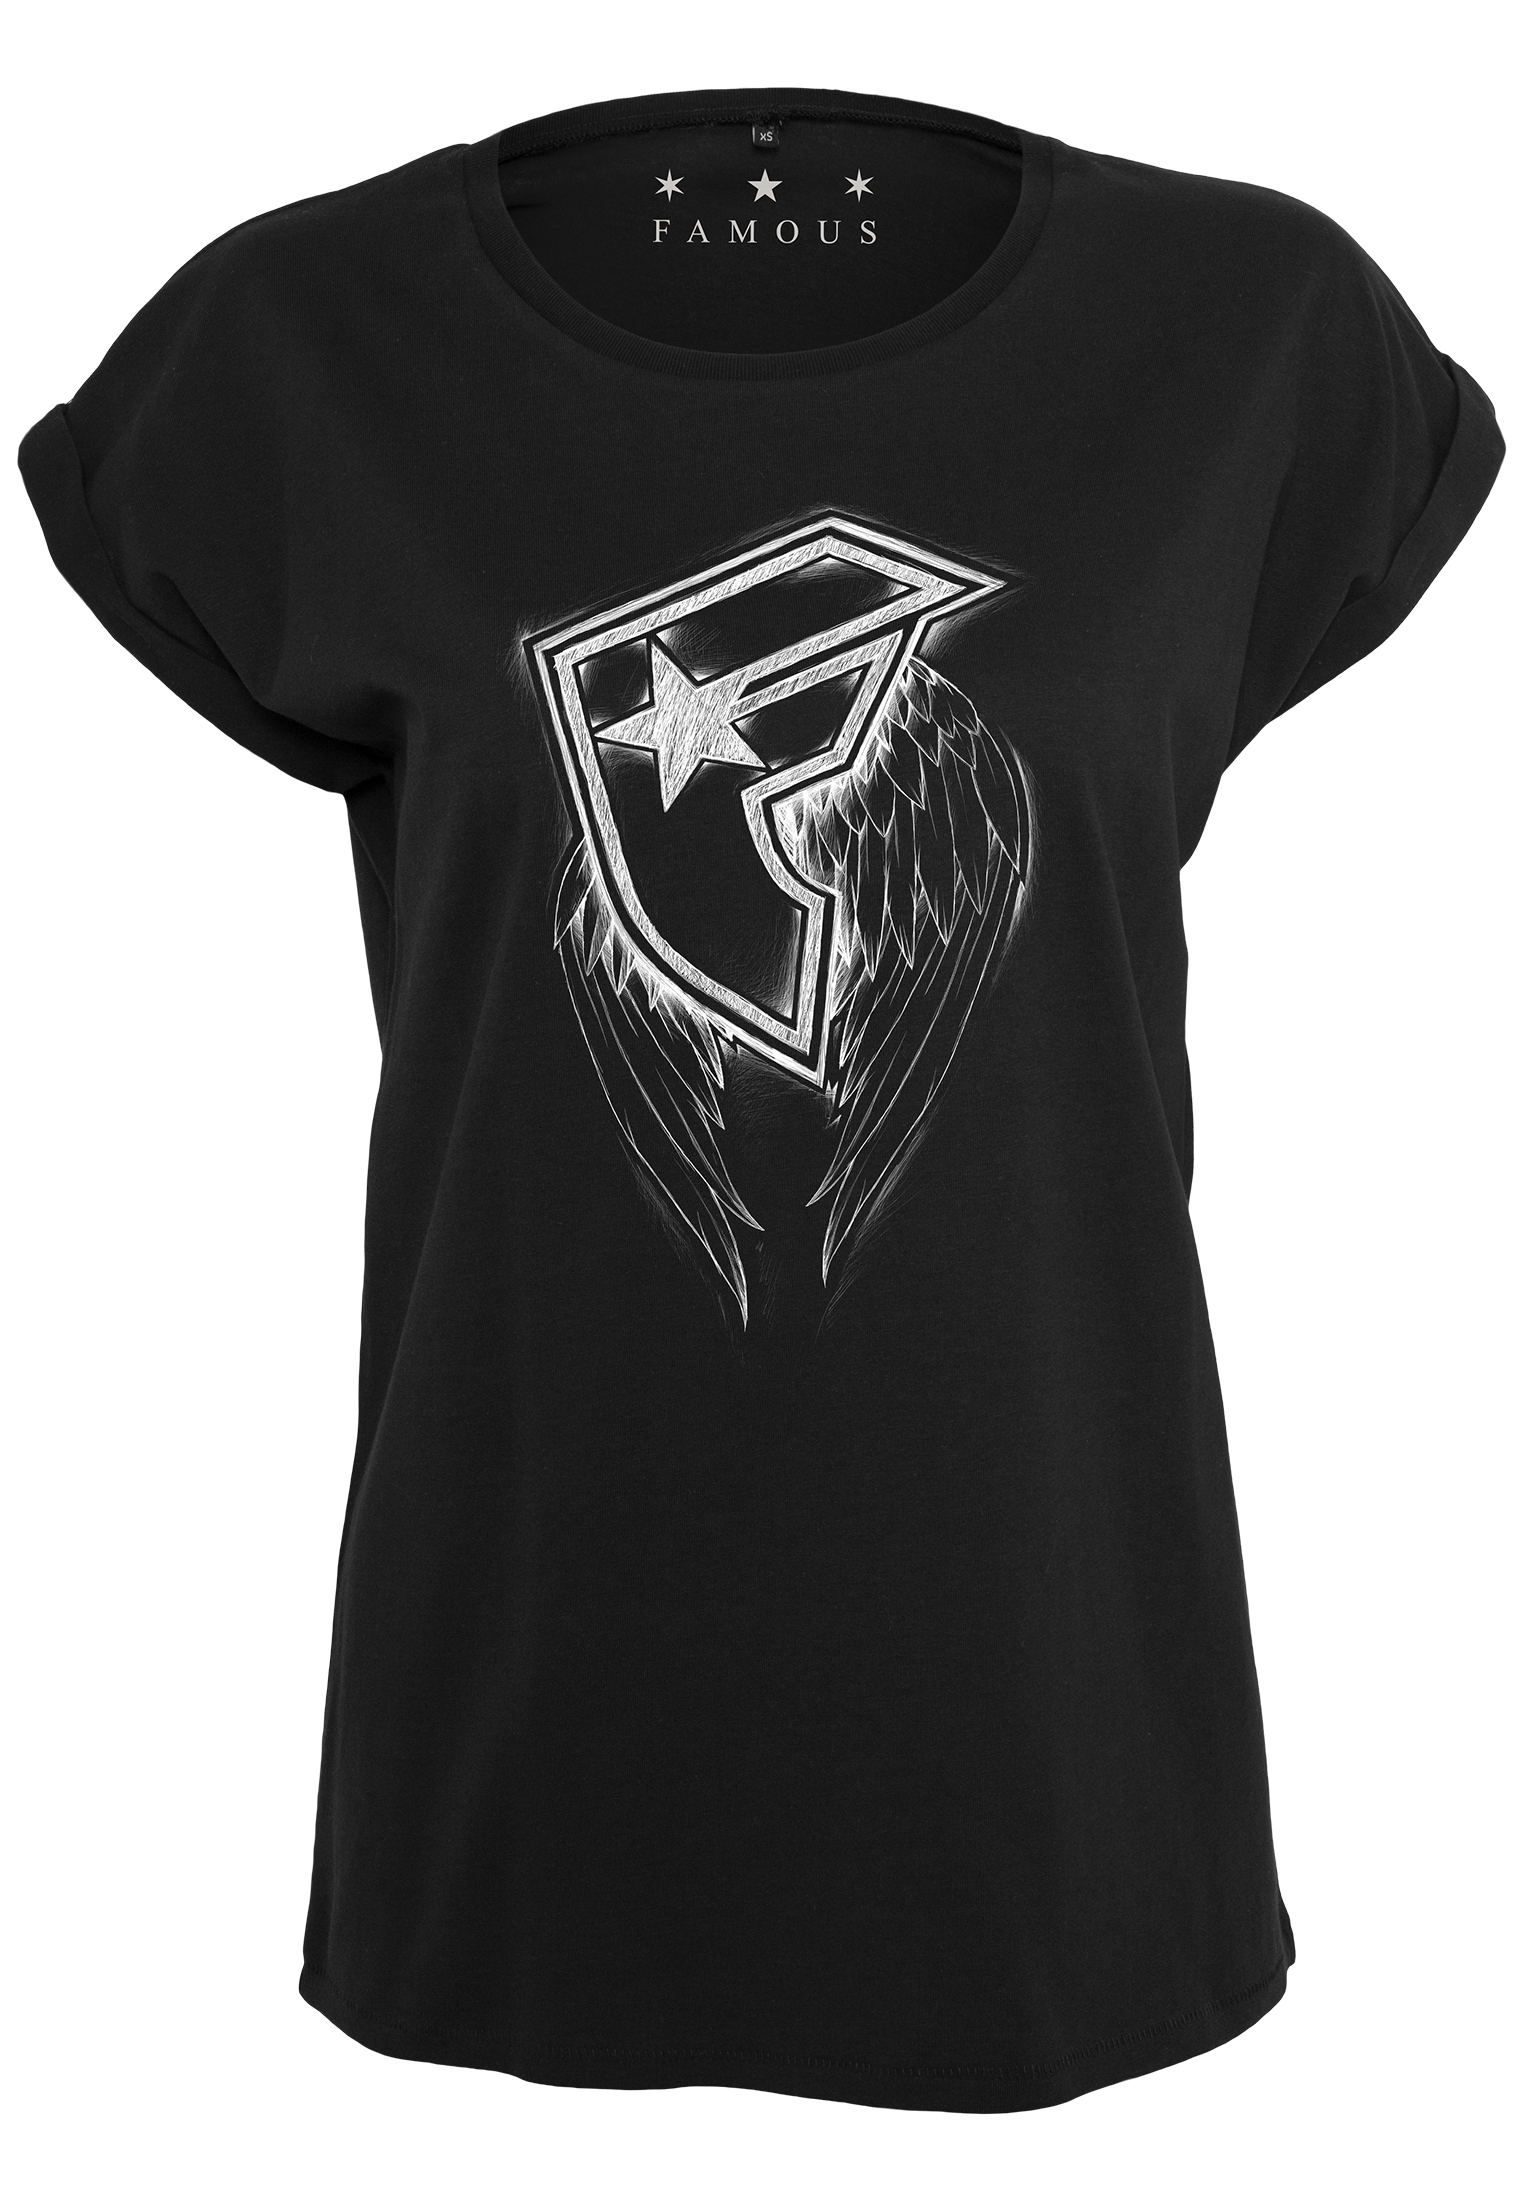 Women's T-shirt Wings black